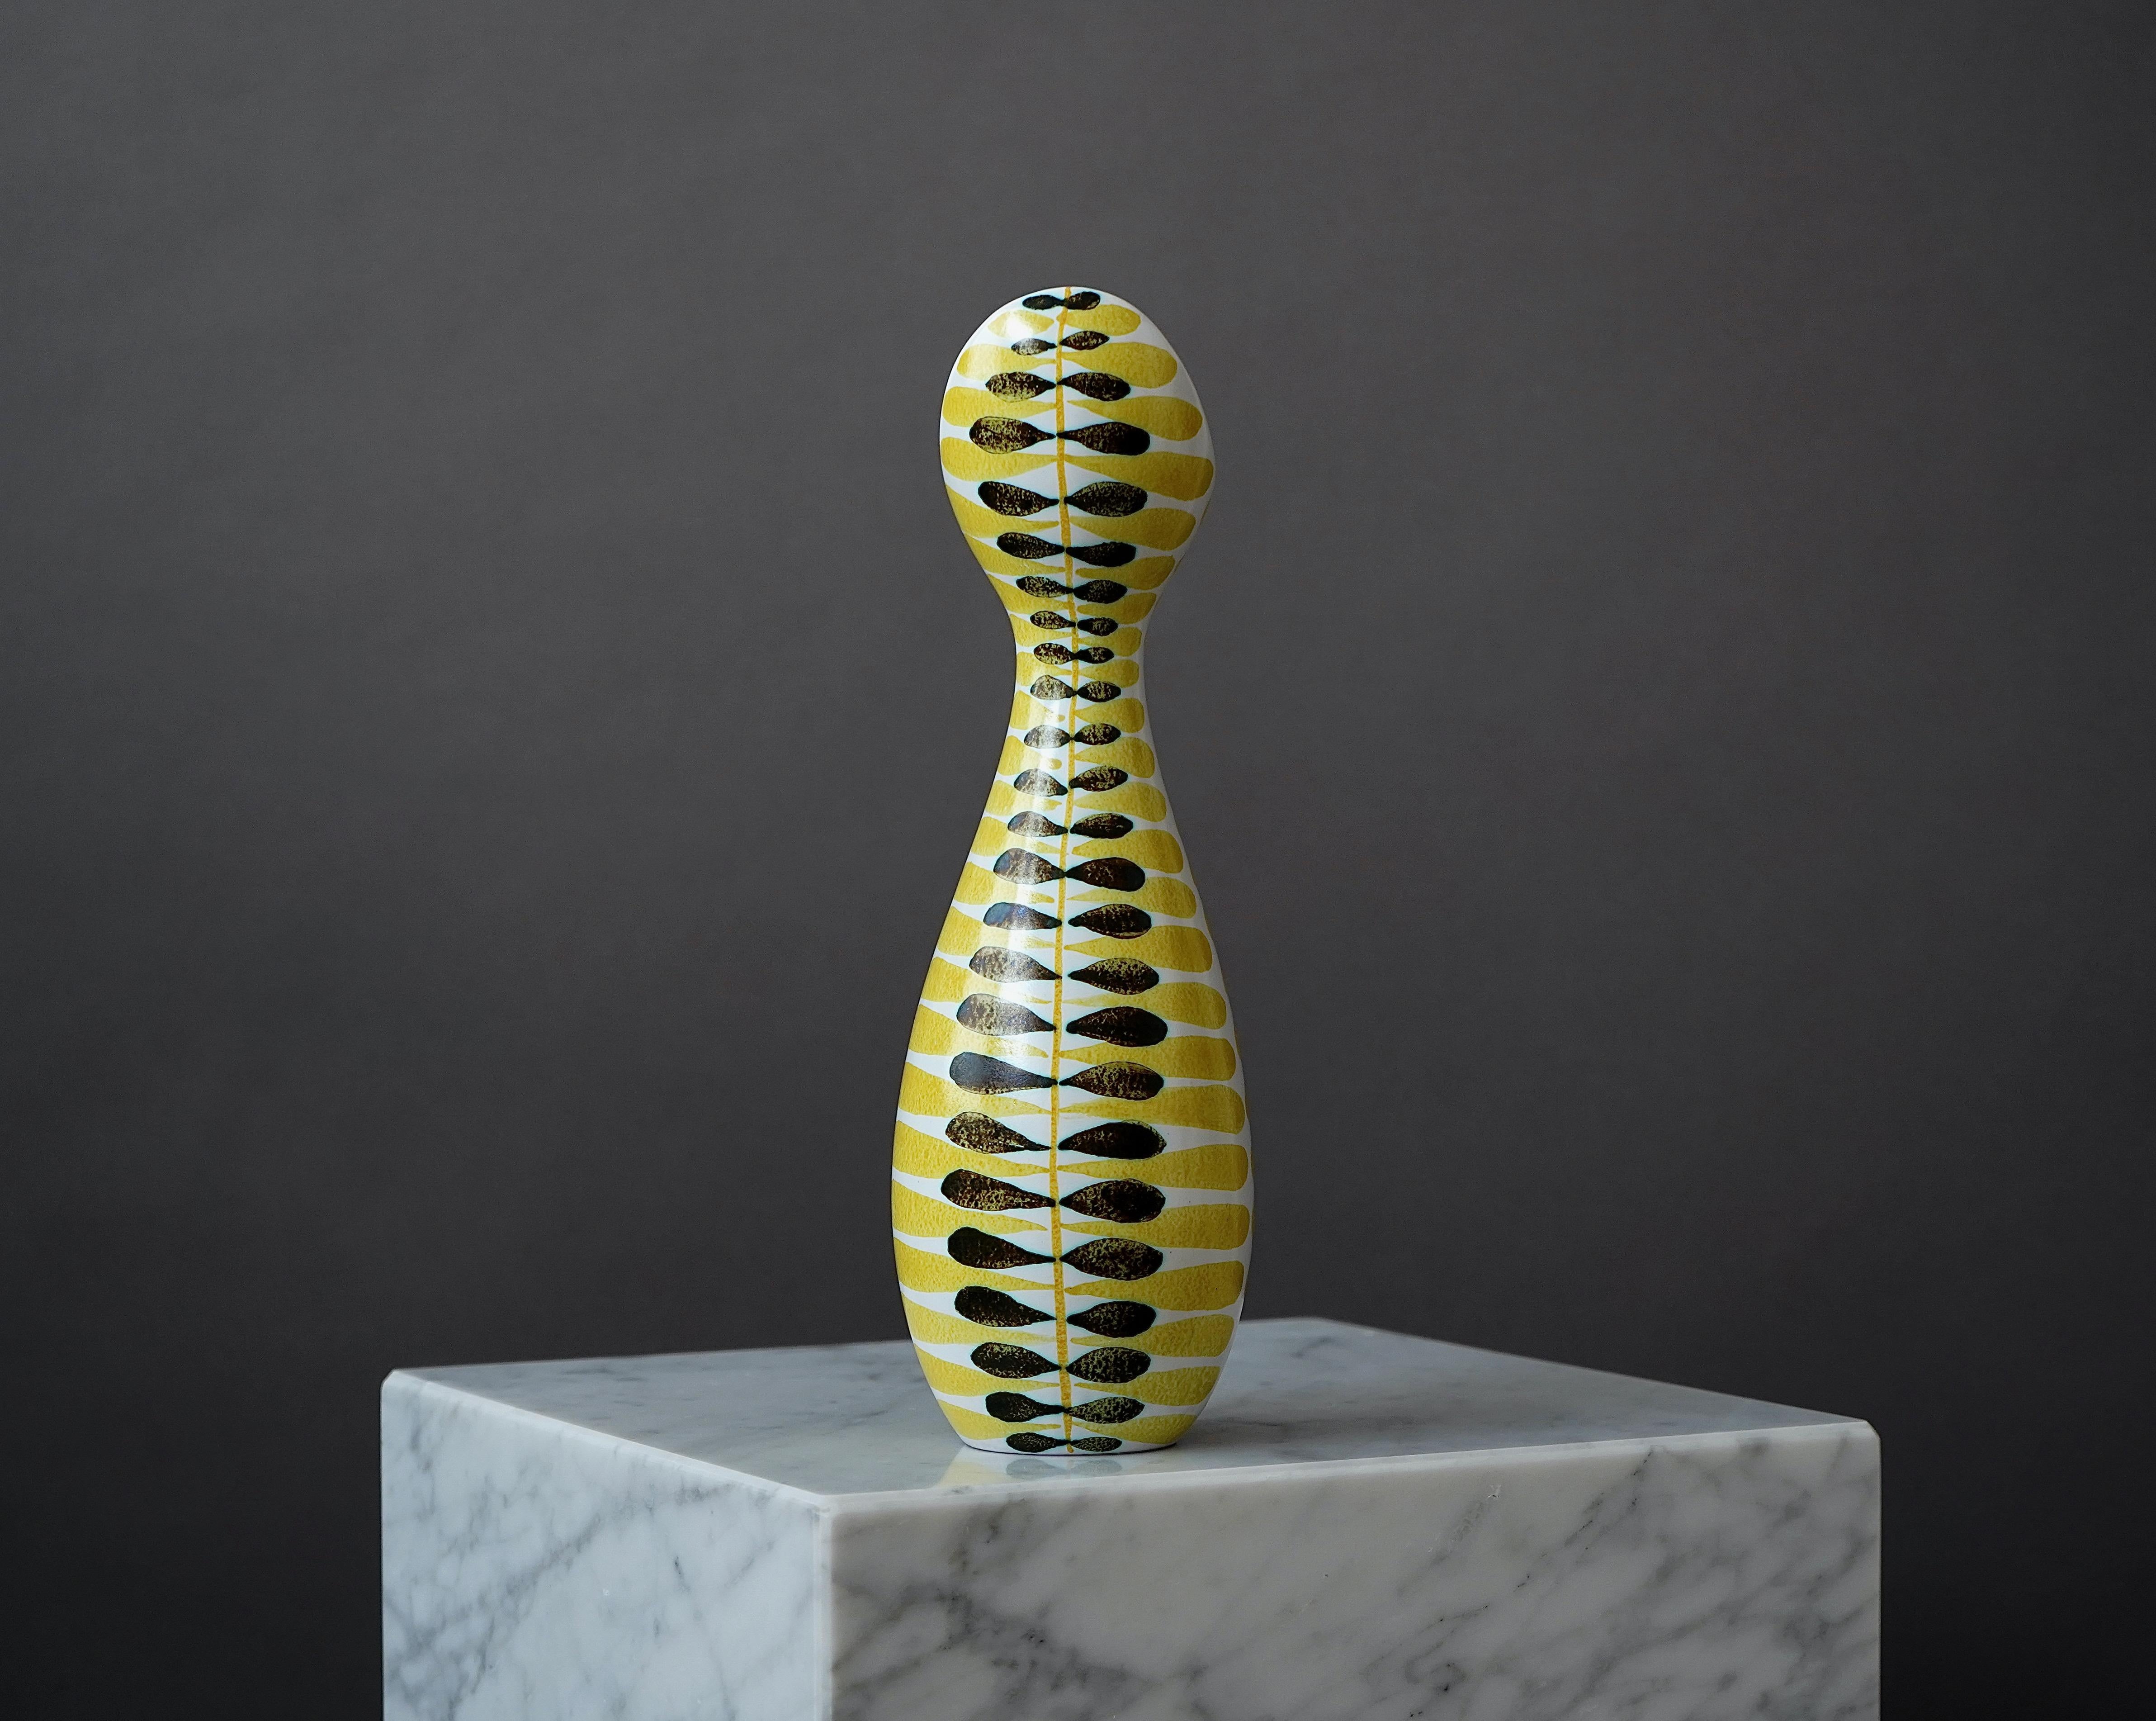 Mid-Century Modern Faience Vase by Stig Lindberg for Gustavsberg Studio, Sweden, 1950s For Sale